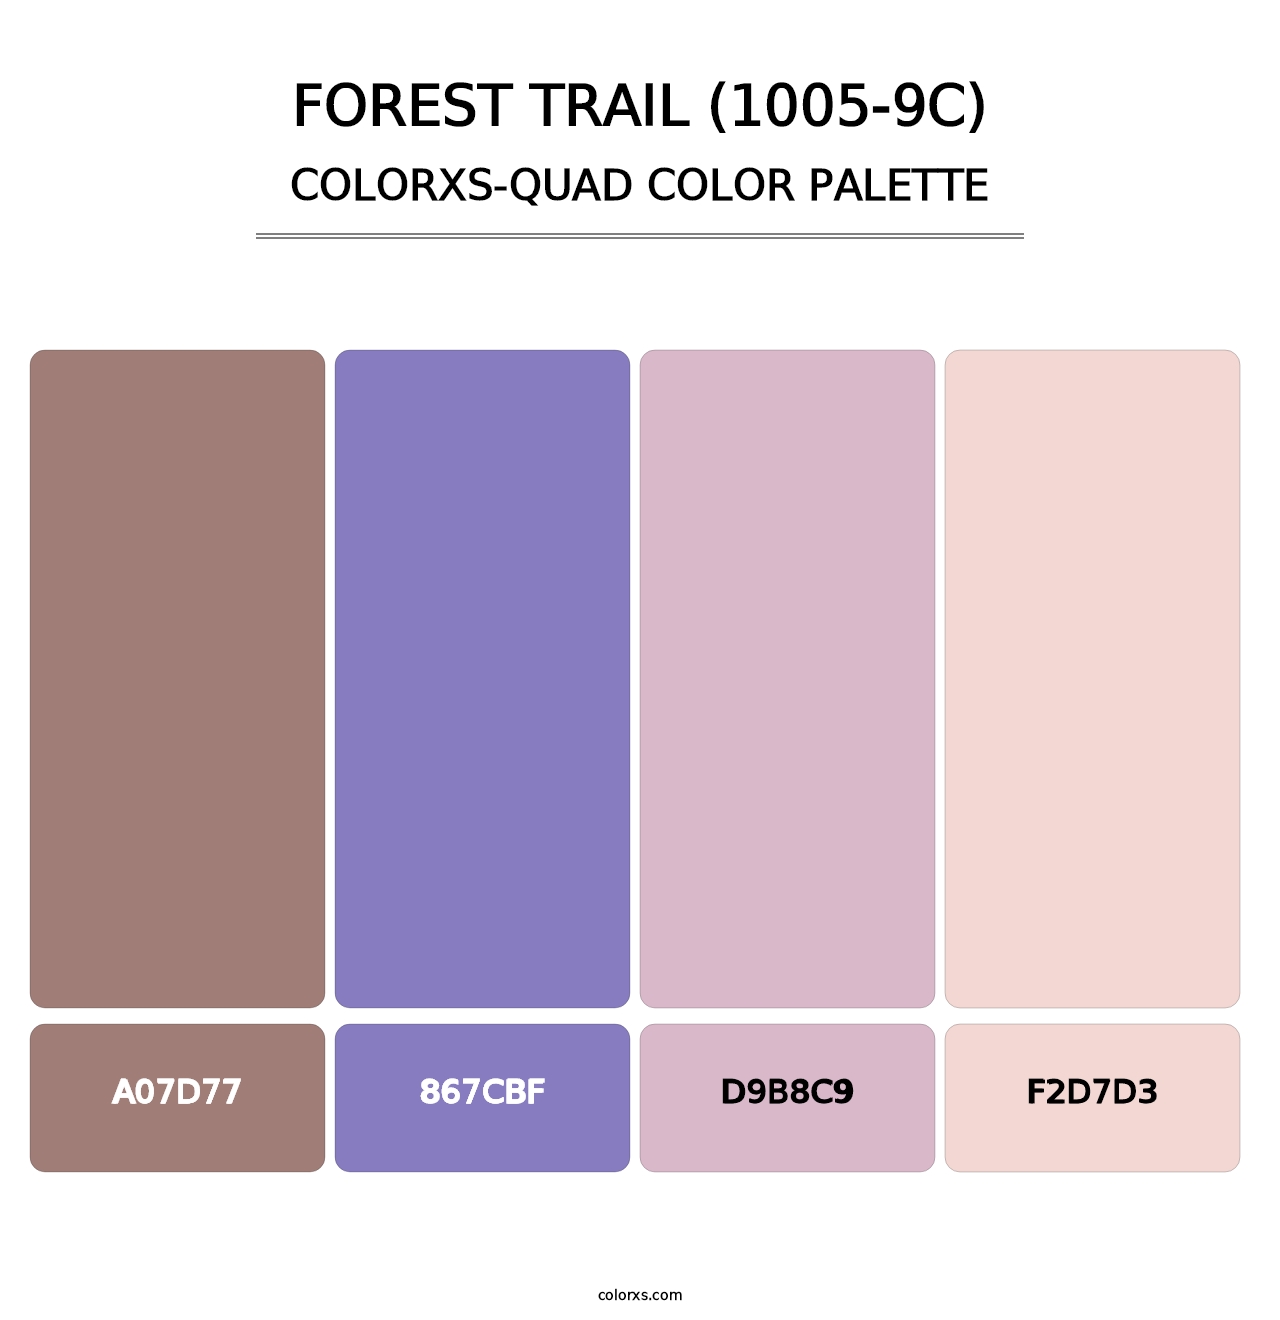 Forest Trail (1005-9C) - Colorxs Quad Palette